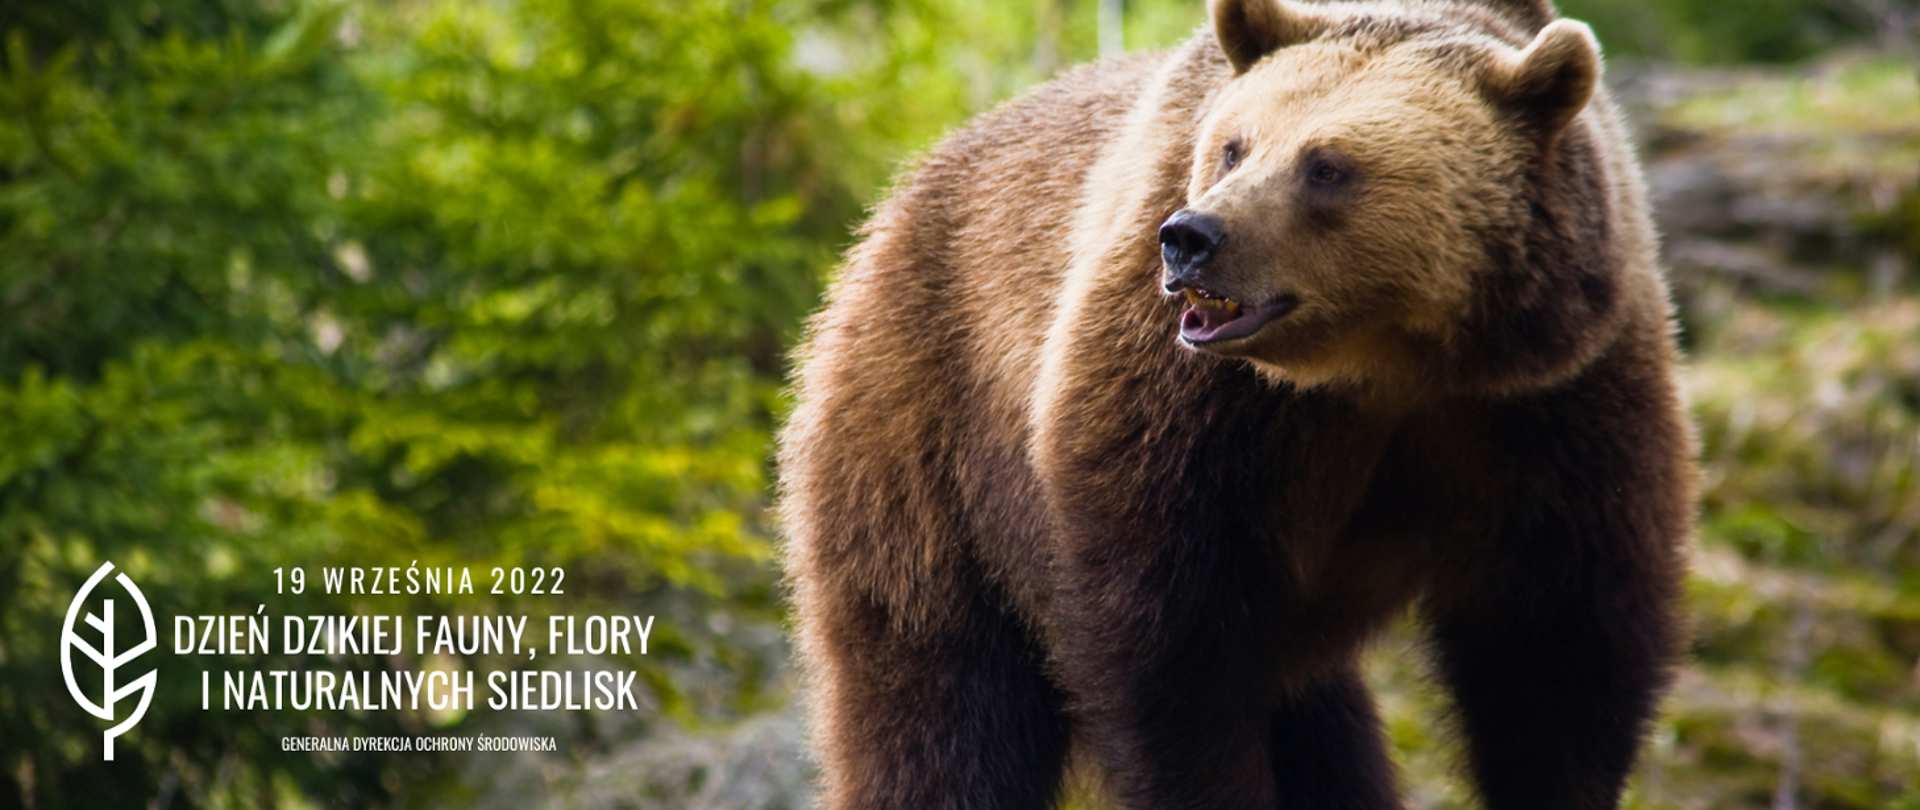 Niedźwiedź brunatny, w tle las. W dolnym lewym rogu biały napis 19 września 2022 dzień dzikiej fauny, flory i naturalnych siedlisk, obok biały liść logo Generalnej Dyrekcji Ochrony Środowiska